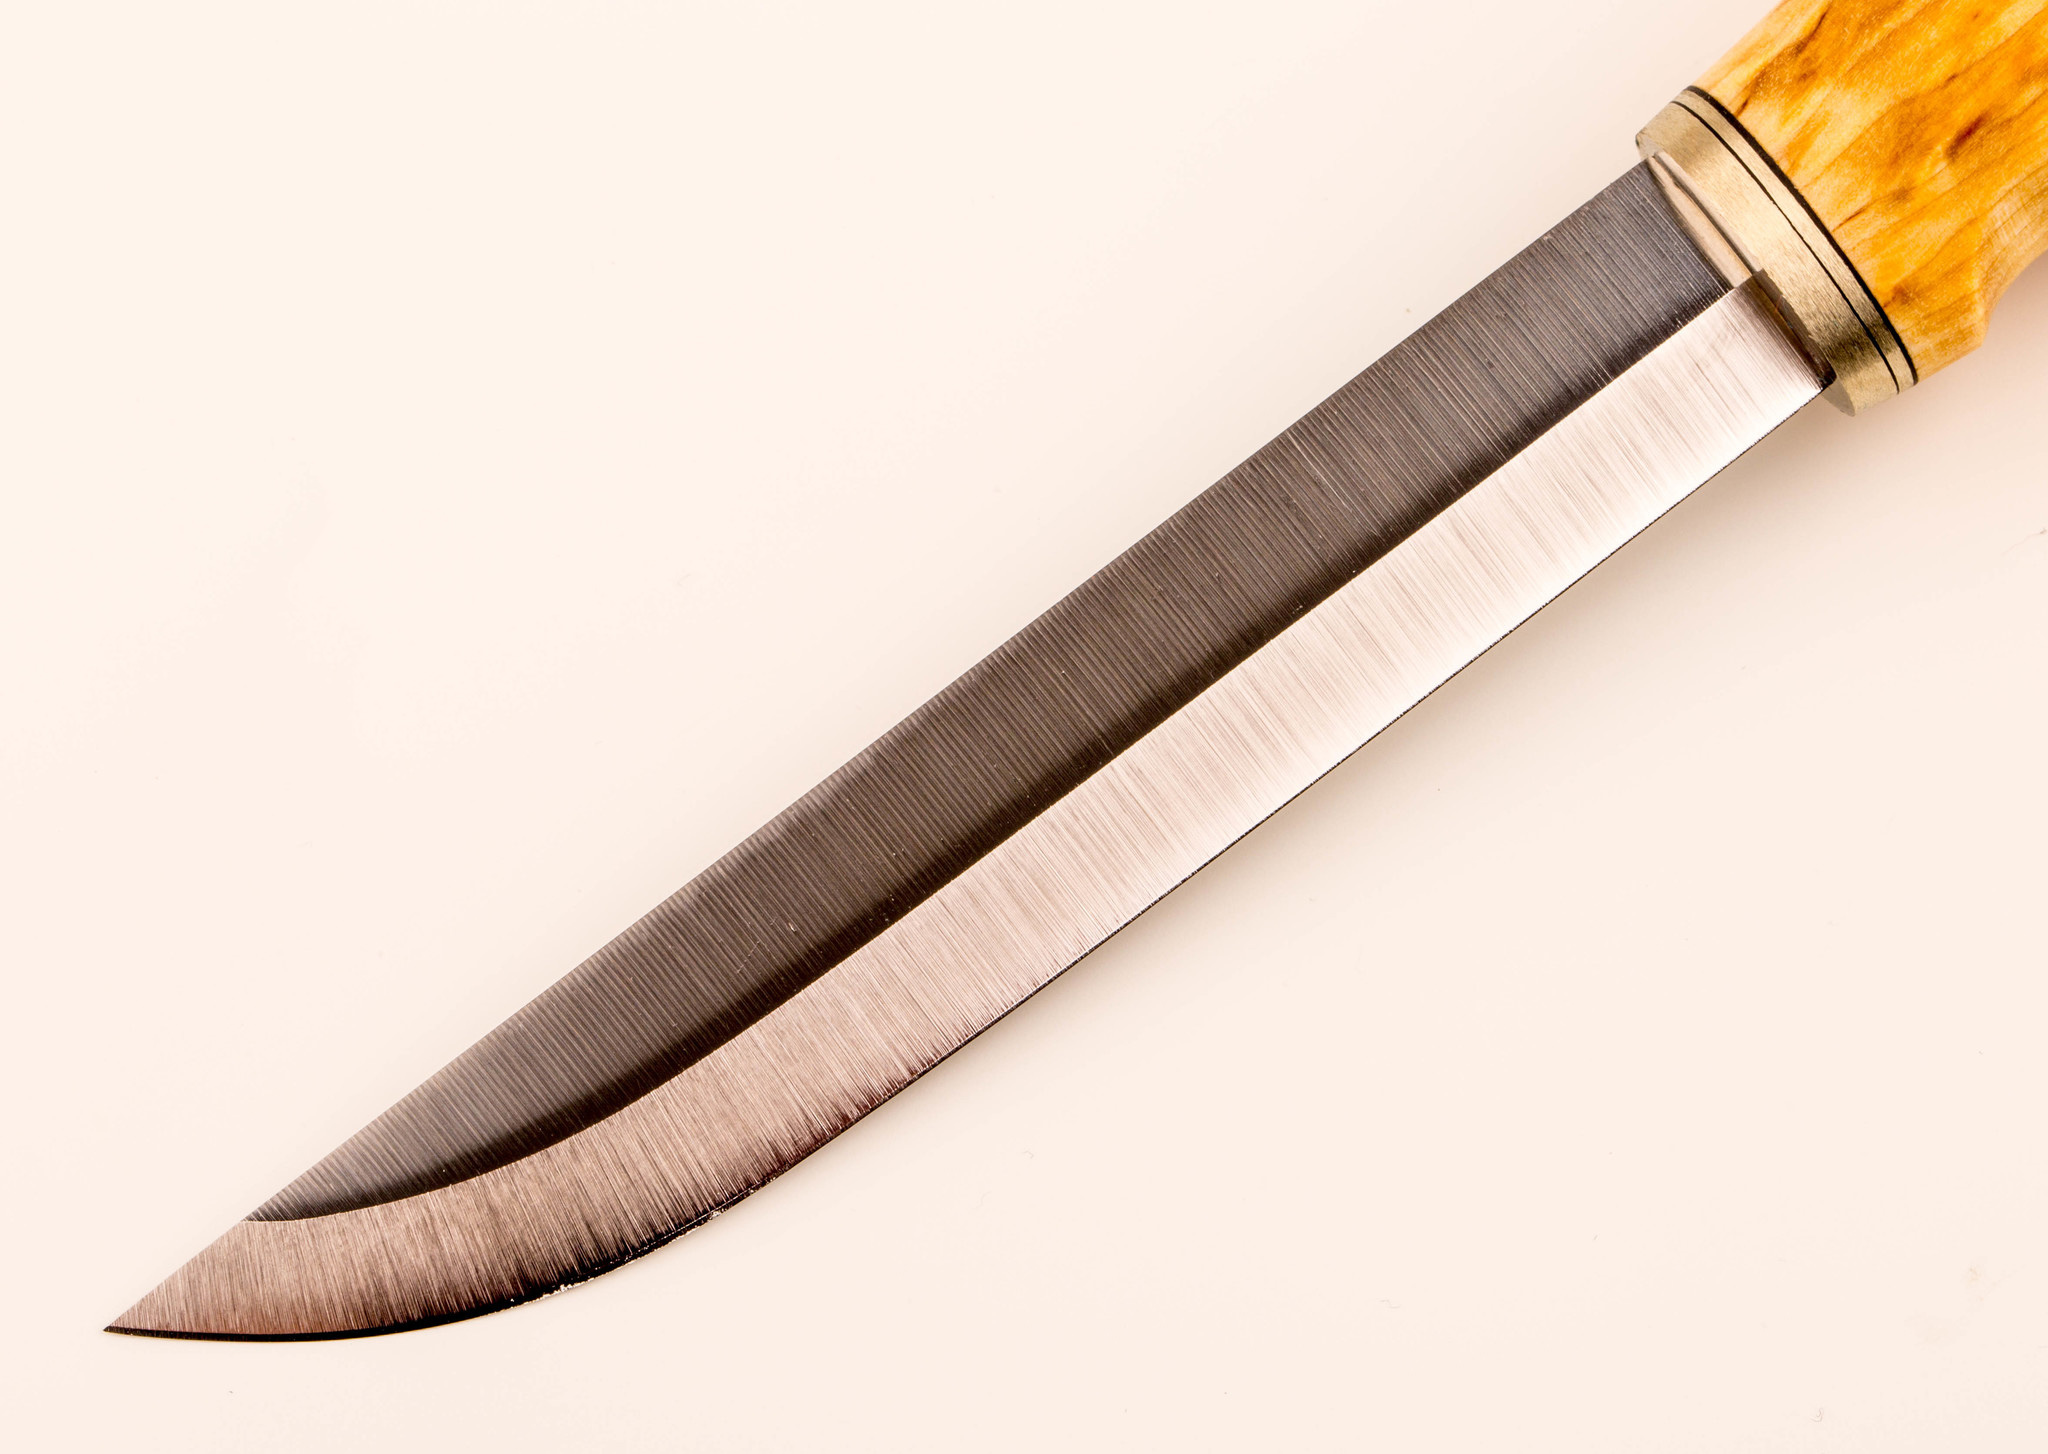 Нож Ahti Puukko Vaara 125 SS, финская береза, сталь Carbon - фото 2